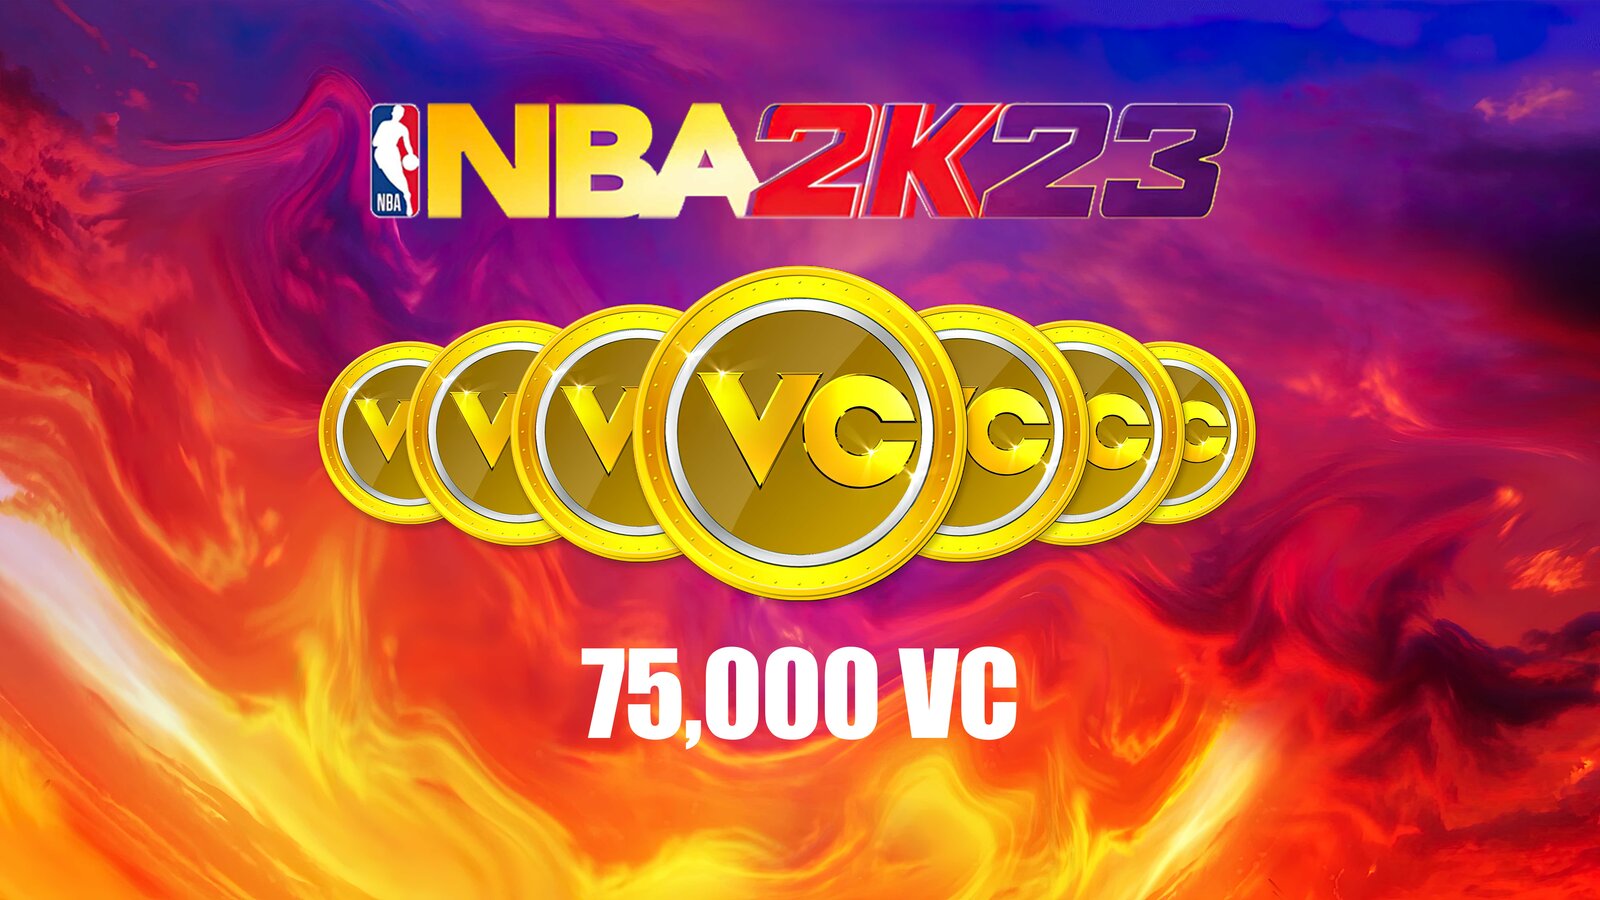 NBA 2K23 - 75,000 VC